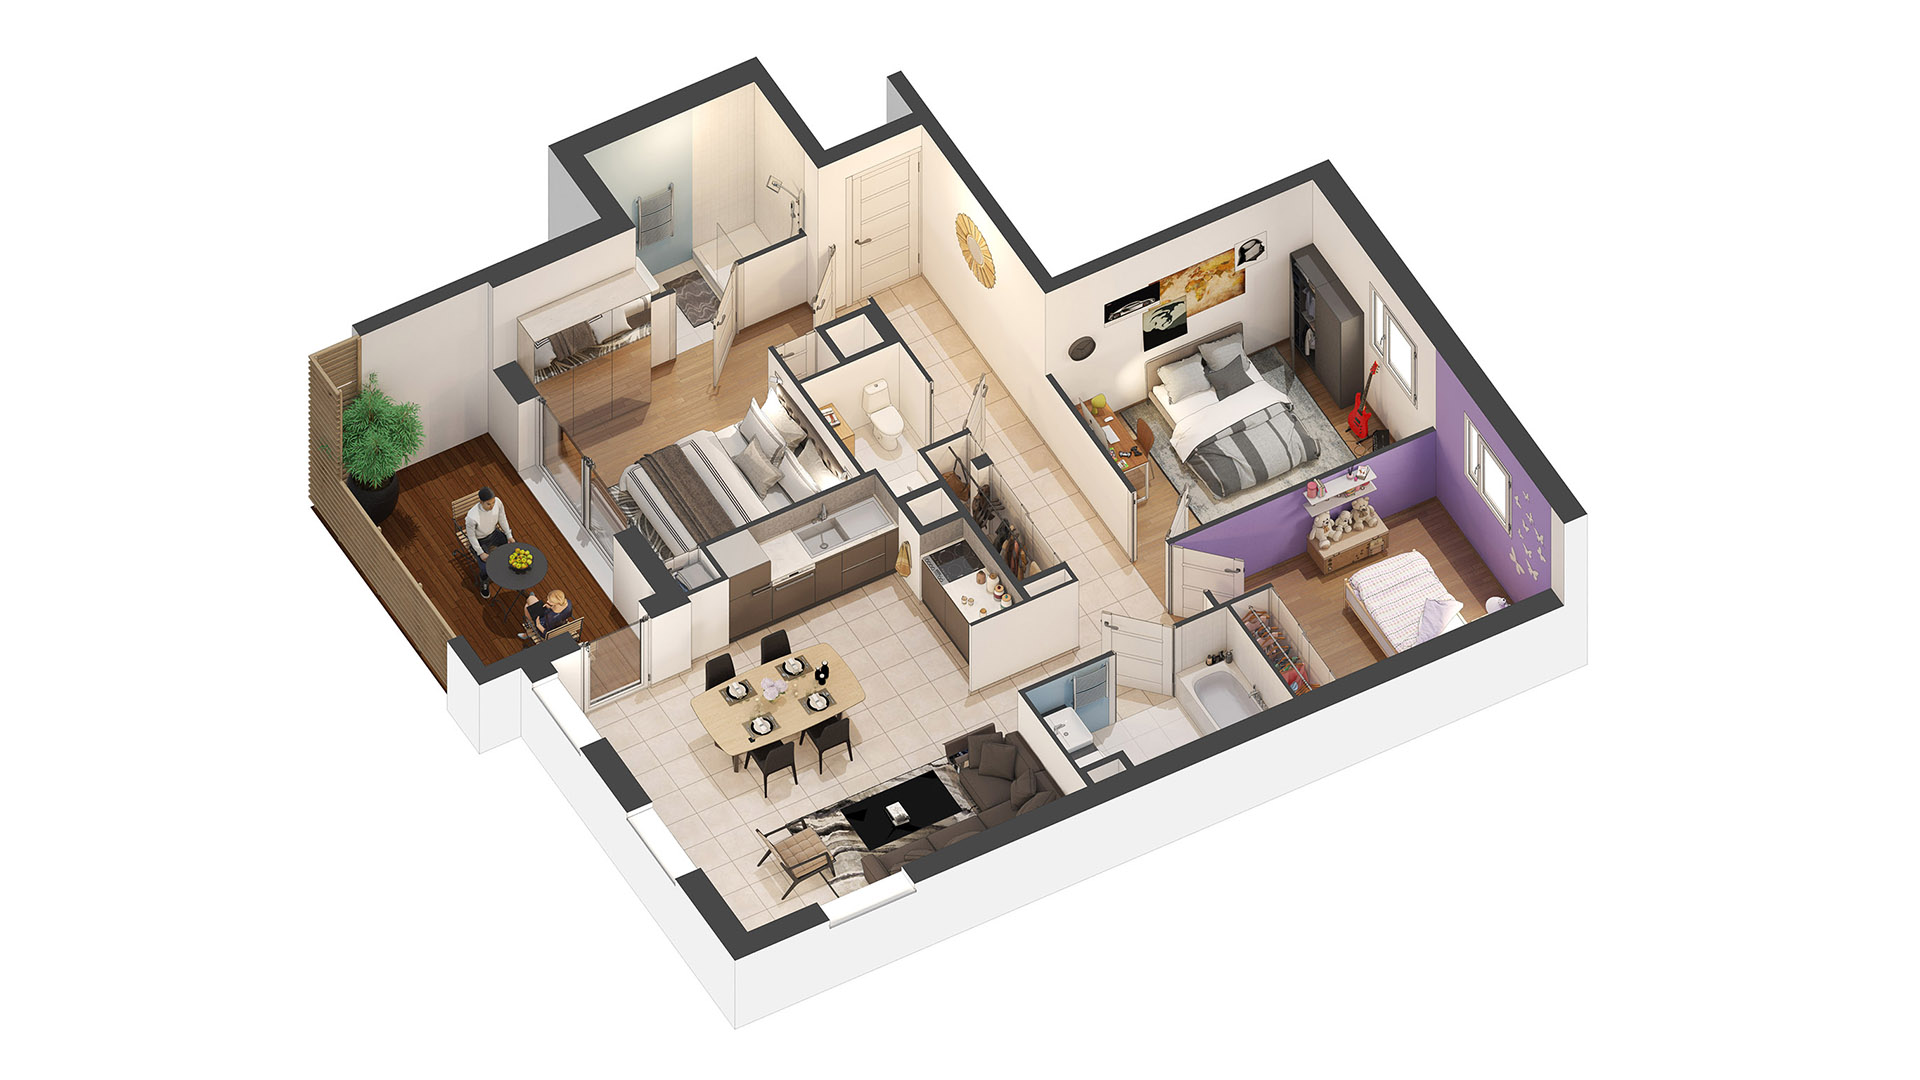 Plan d'appartement en 3D - Architecte 3D